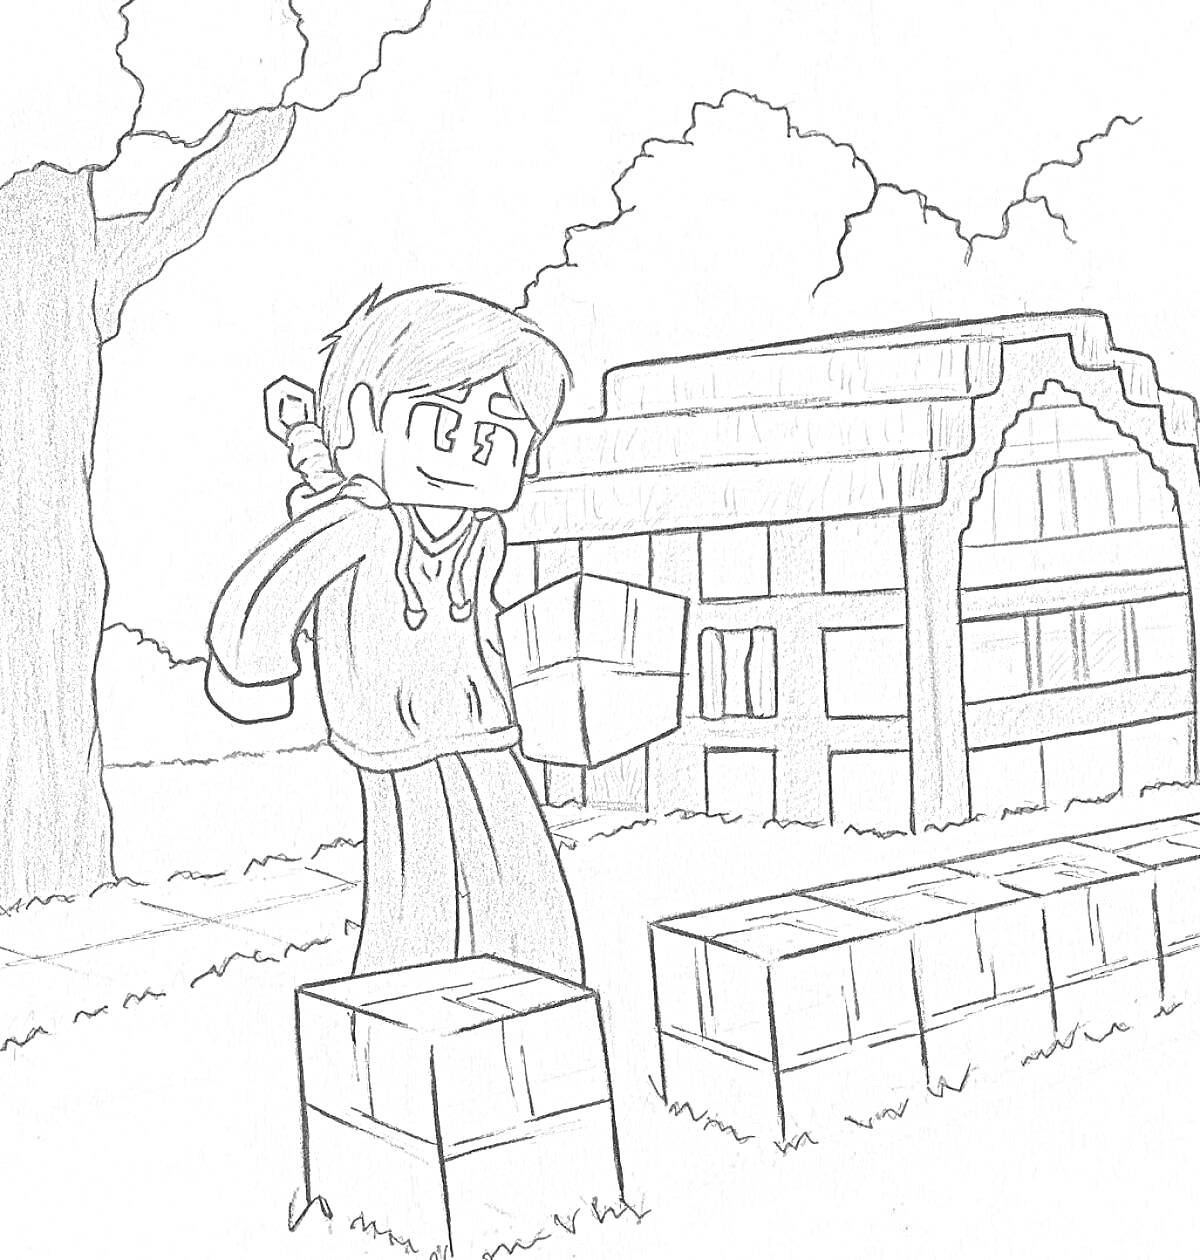 Раскраска Персонаж в майнкрафт-стиле с мечом и щитом на фоне дома и дерева